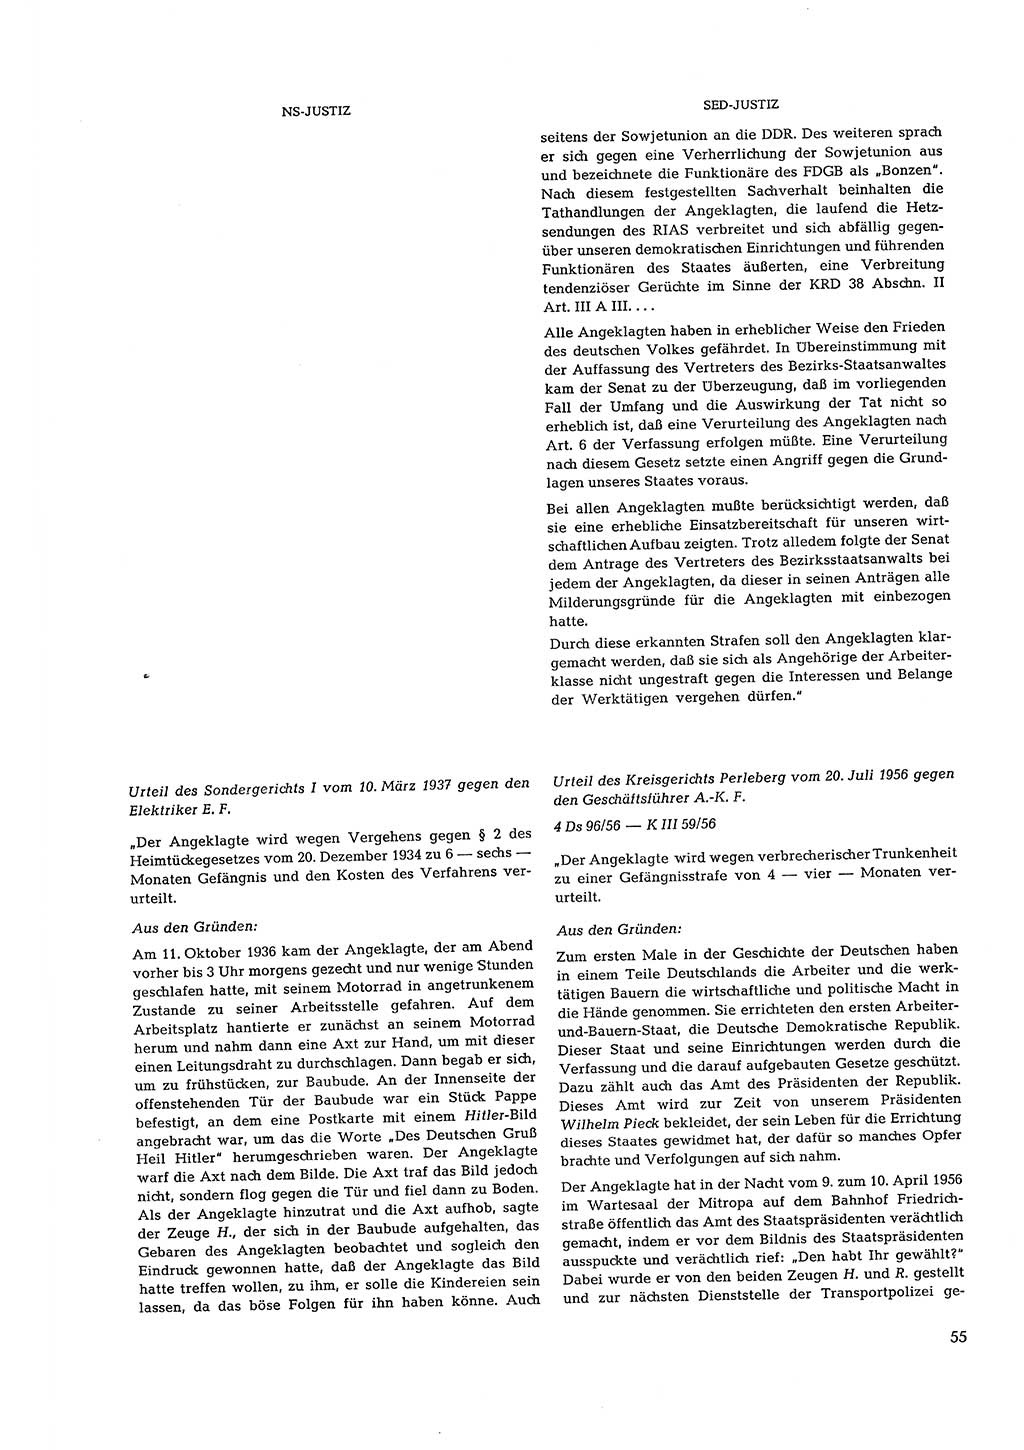 Partei-Justiz, Dokumentation über den nationalsozialistischen und kommunistischen Rechtsmißbrauch in Deutschland 1933-1963, Seite 55 (Part.-Just. Dtl. natsoz. komm. 1933-1963, S. 55)